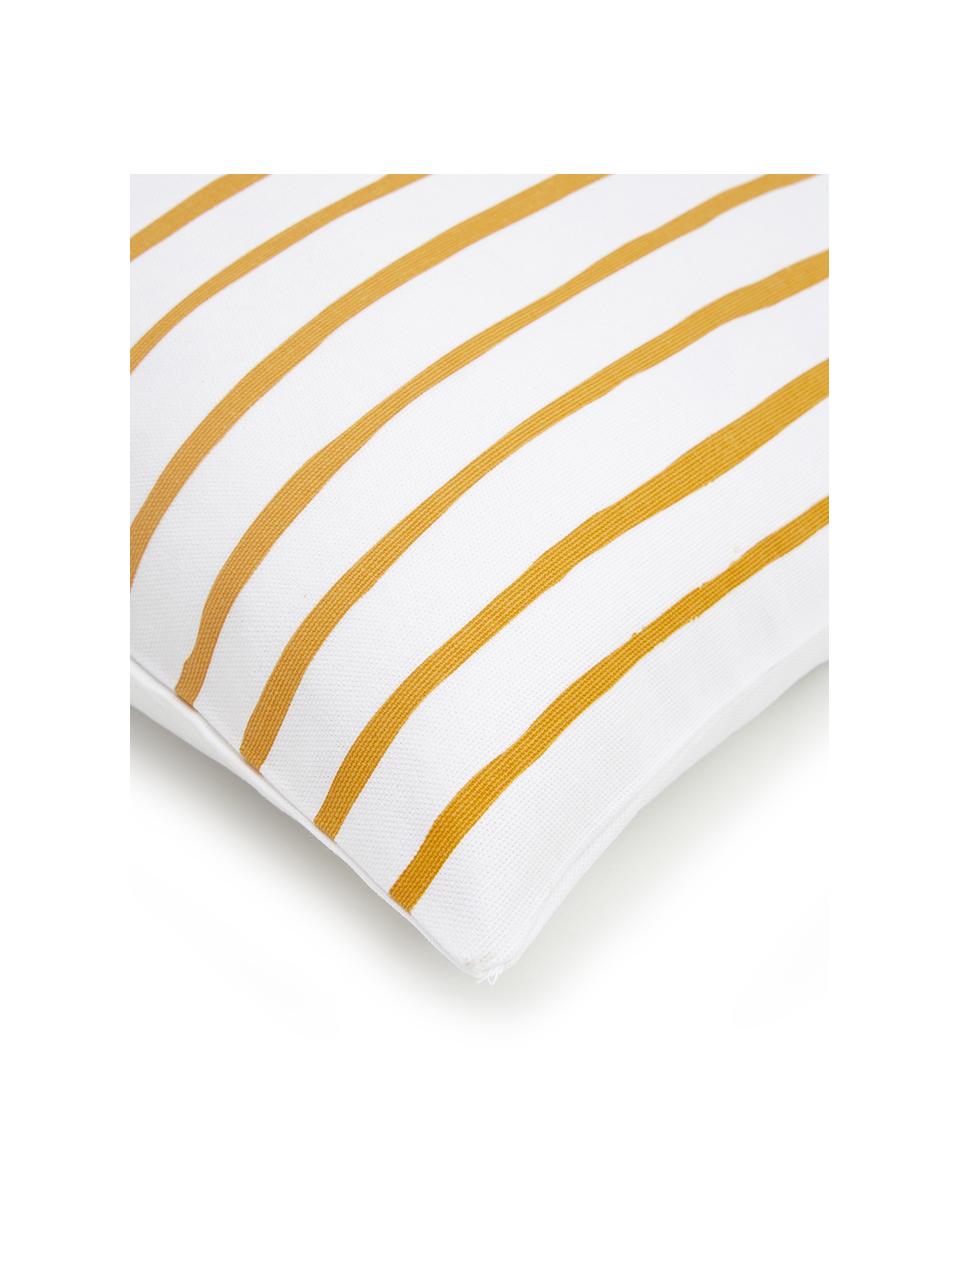 Federa arredo a righe color giallo/bianco Ola, 100% cotone, Arancione, bianco, Larg. 40 x Lung. 40 cm